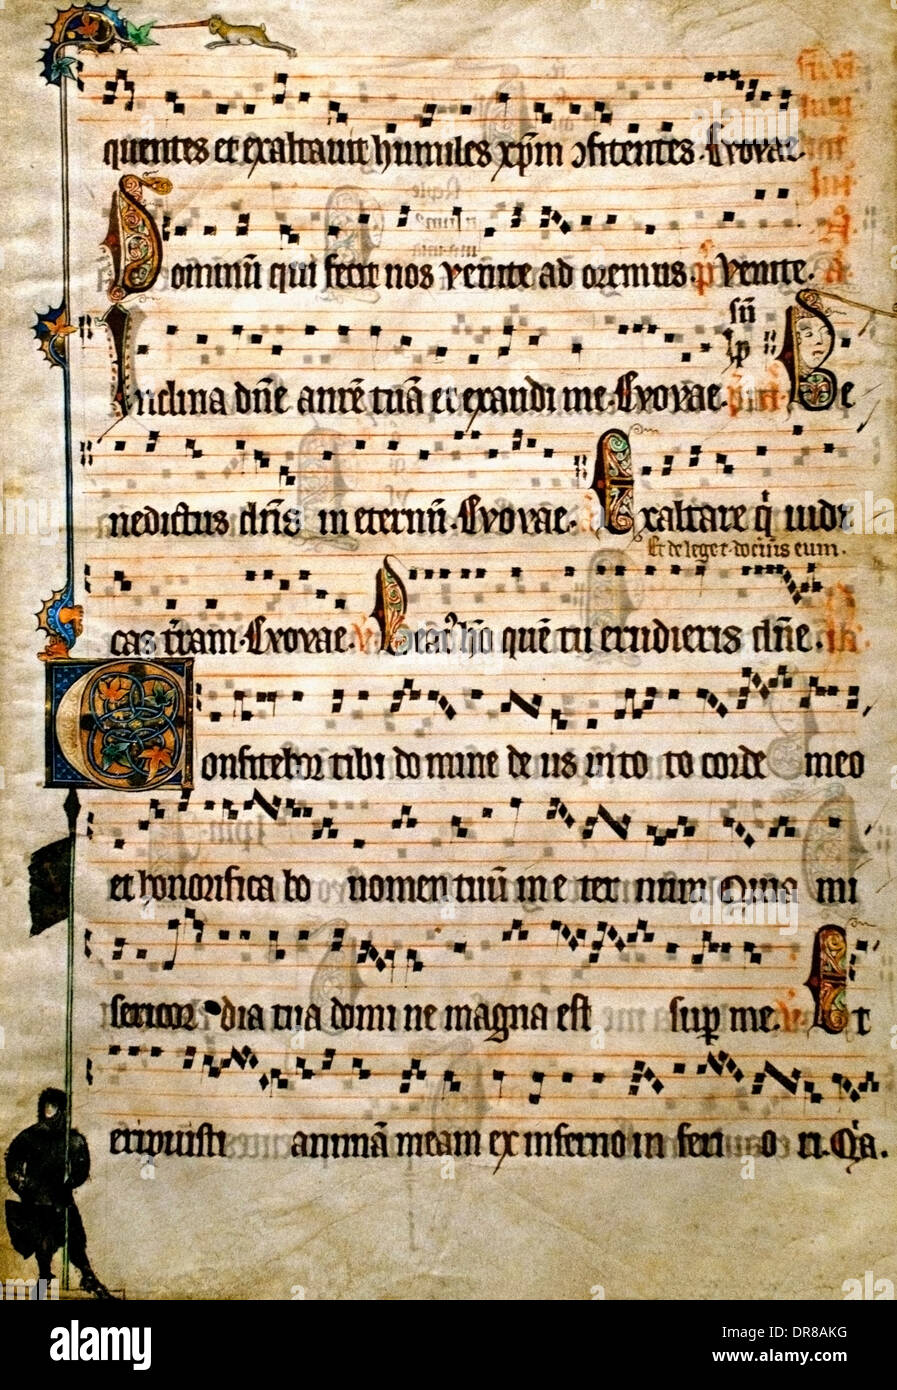 Feuille d'un antiphonaire Flandre ( Belgique Bruges ou Gand) 1310-1320 Feria 6 par an Banque D'Images